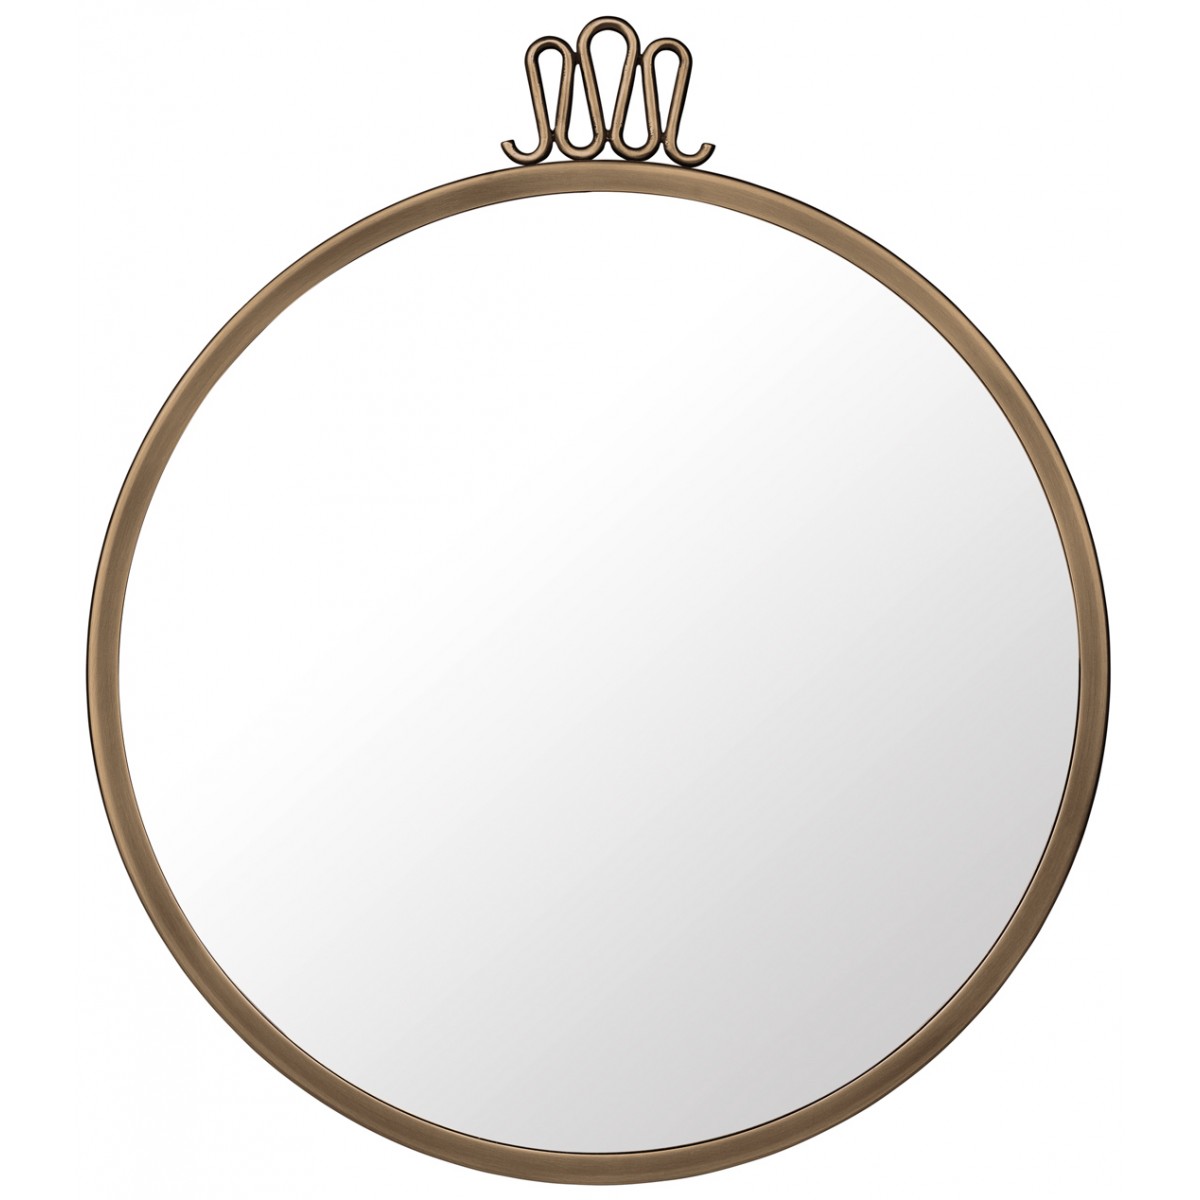 Ø42cm - Randaccio Wall Mirror - Round - Antique Brass - OFFER